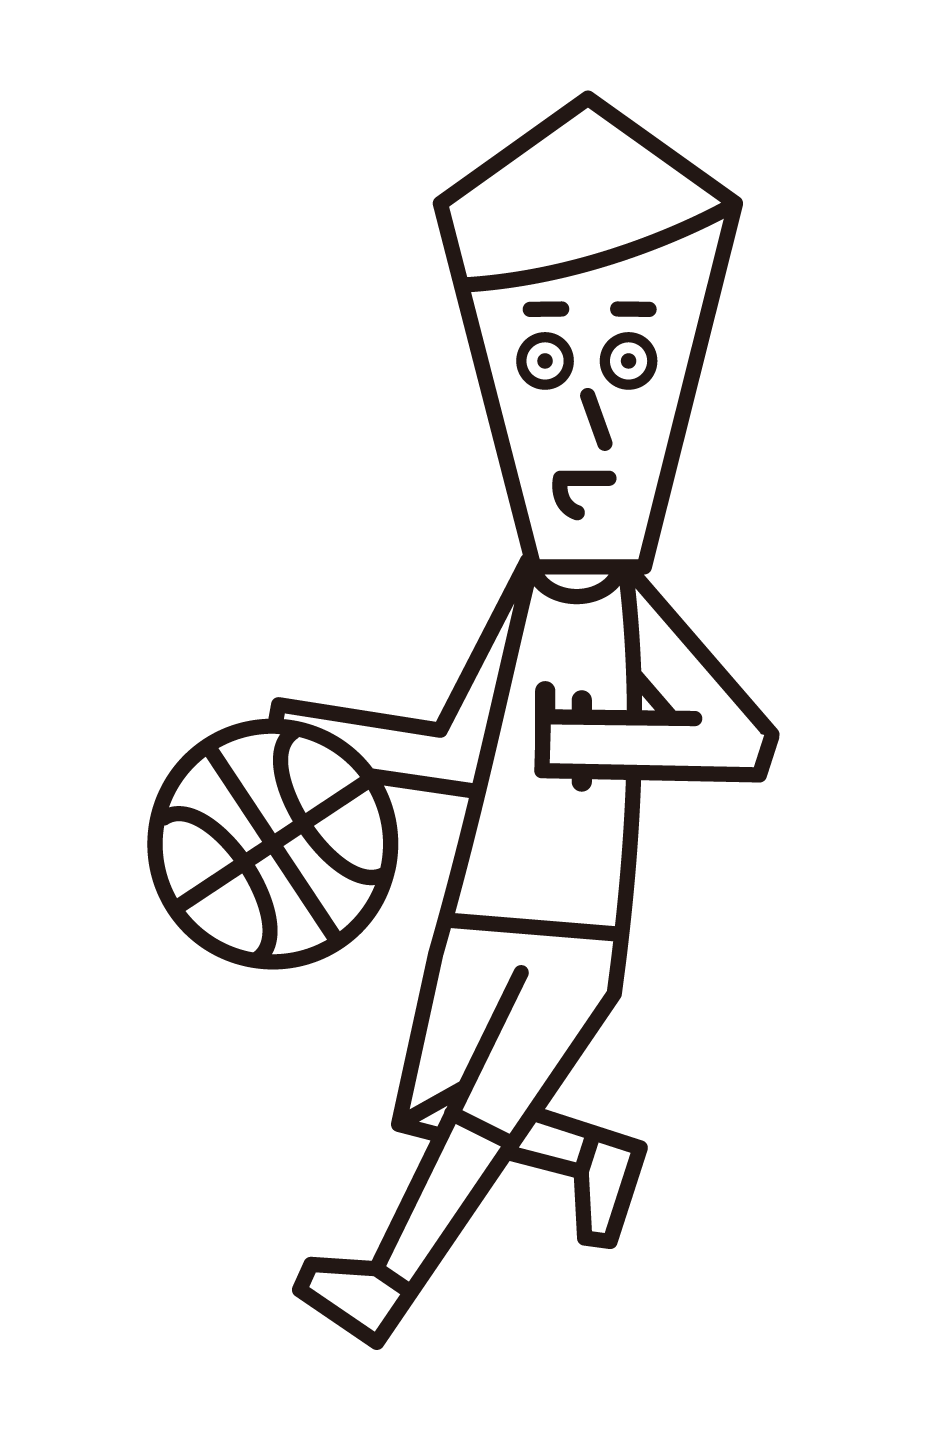 ドリブルをするバスケットボール選手（男性）のイラスト